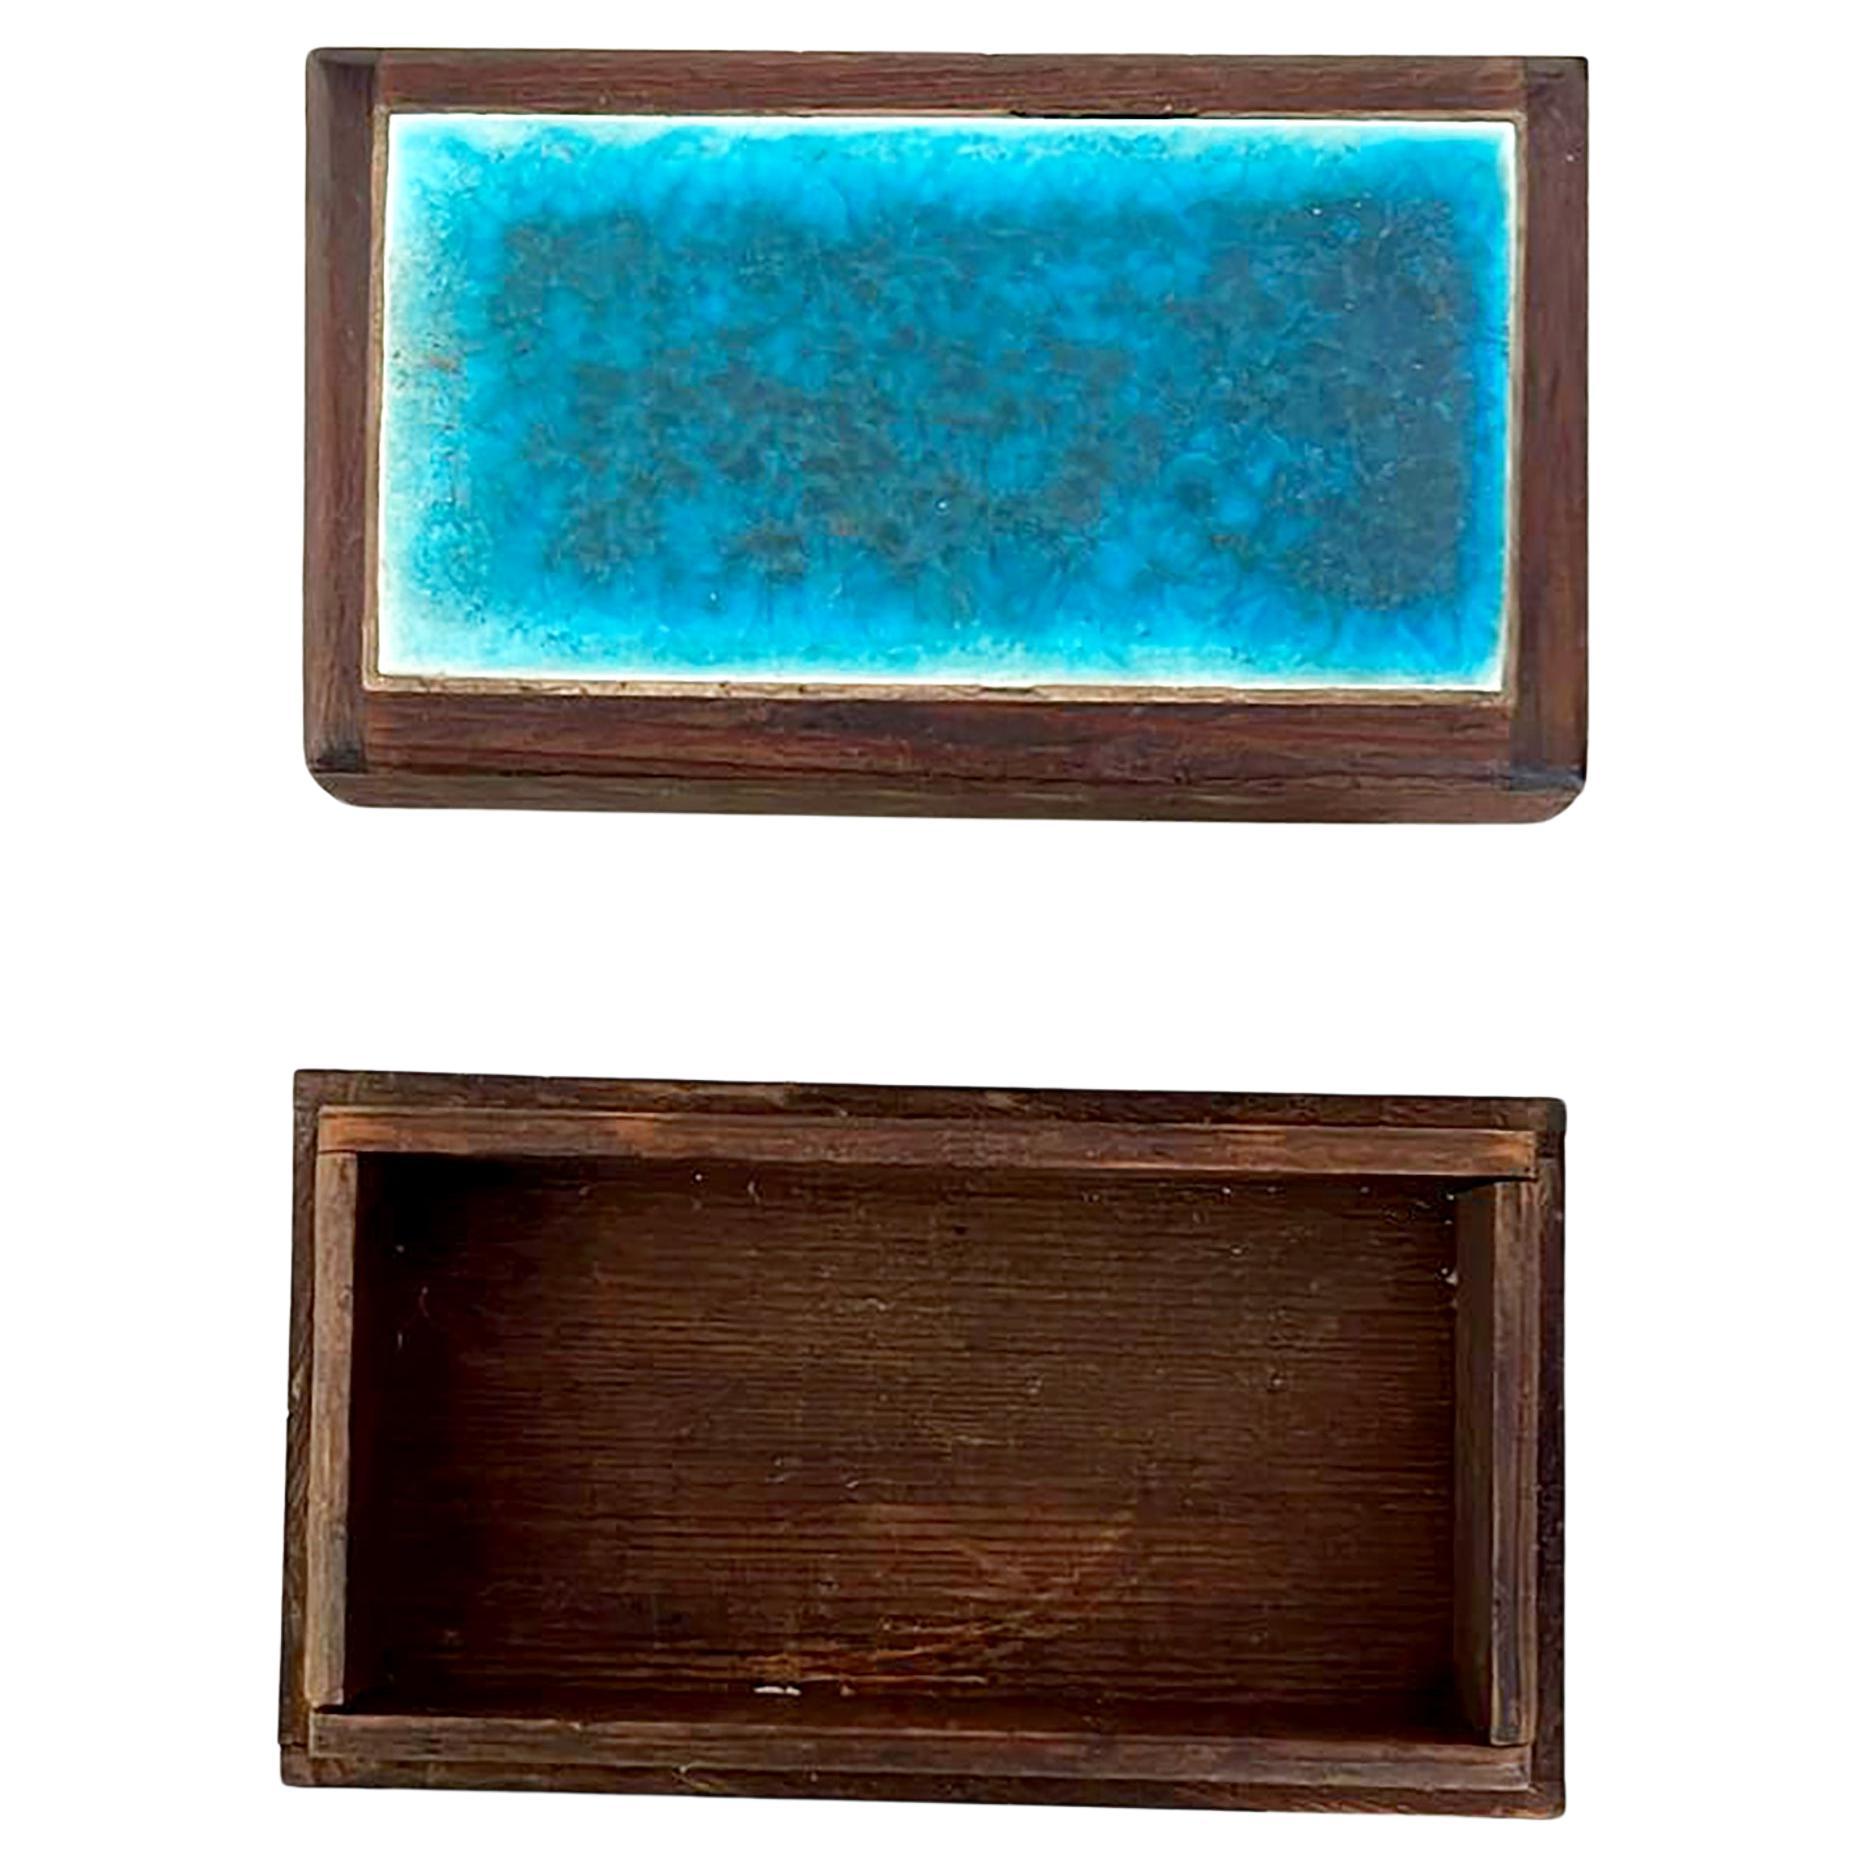 Vernissé Doyle Lane Blue Craquelure Tile Set in Hand Made Rosewood Box (Ensemble de carreaux en craquelure bleue dans un coffret en bois de rose fait à la main)  en vente